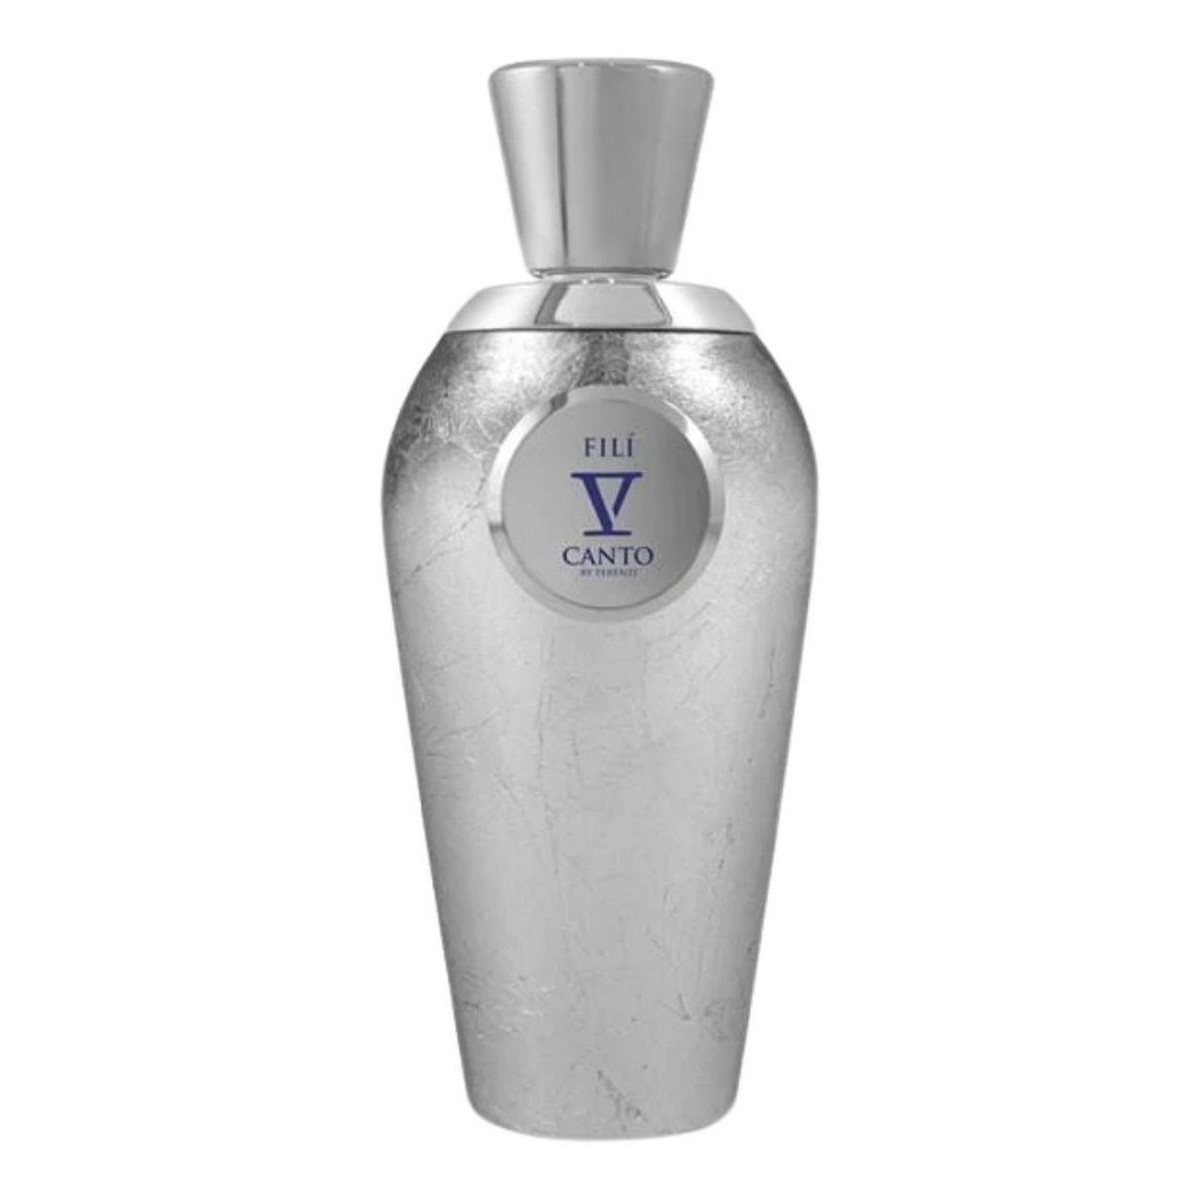 Tiziana Terenzi V canto fili unisex ekstrakt perfum 100ml